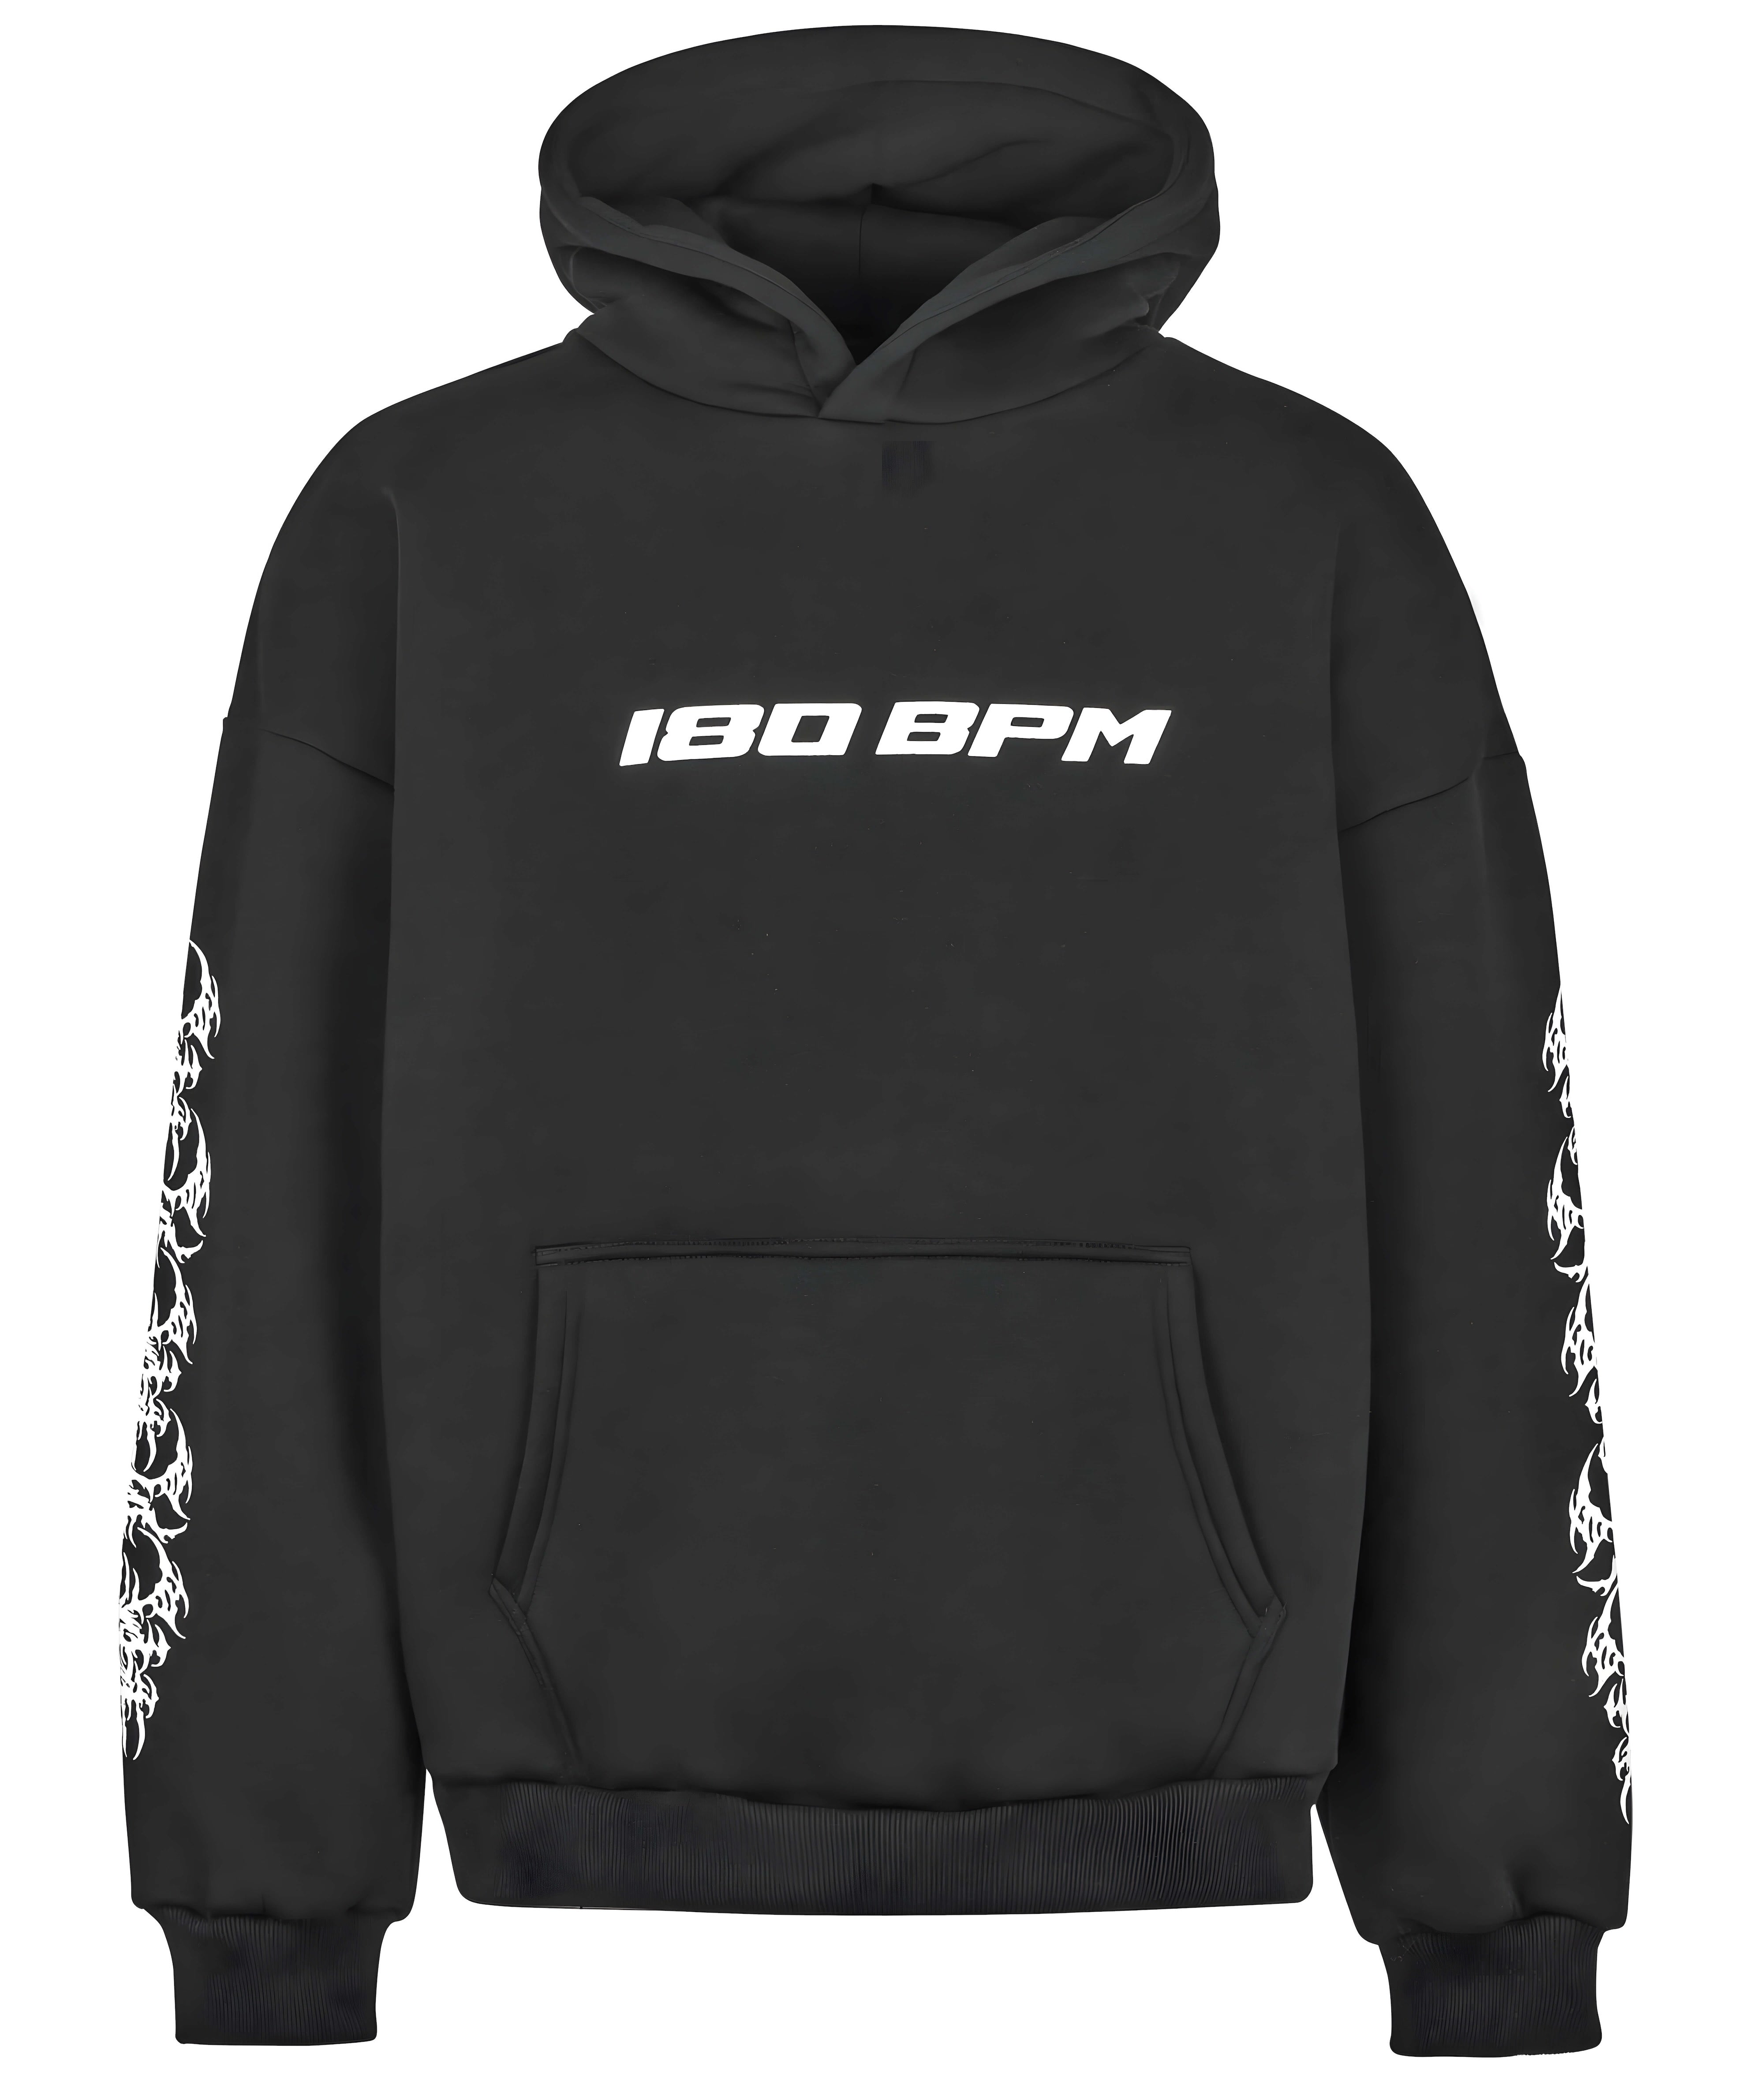 180 bpm hoodie black r+